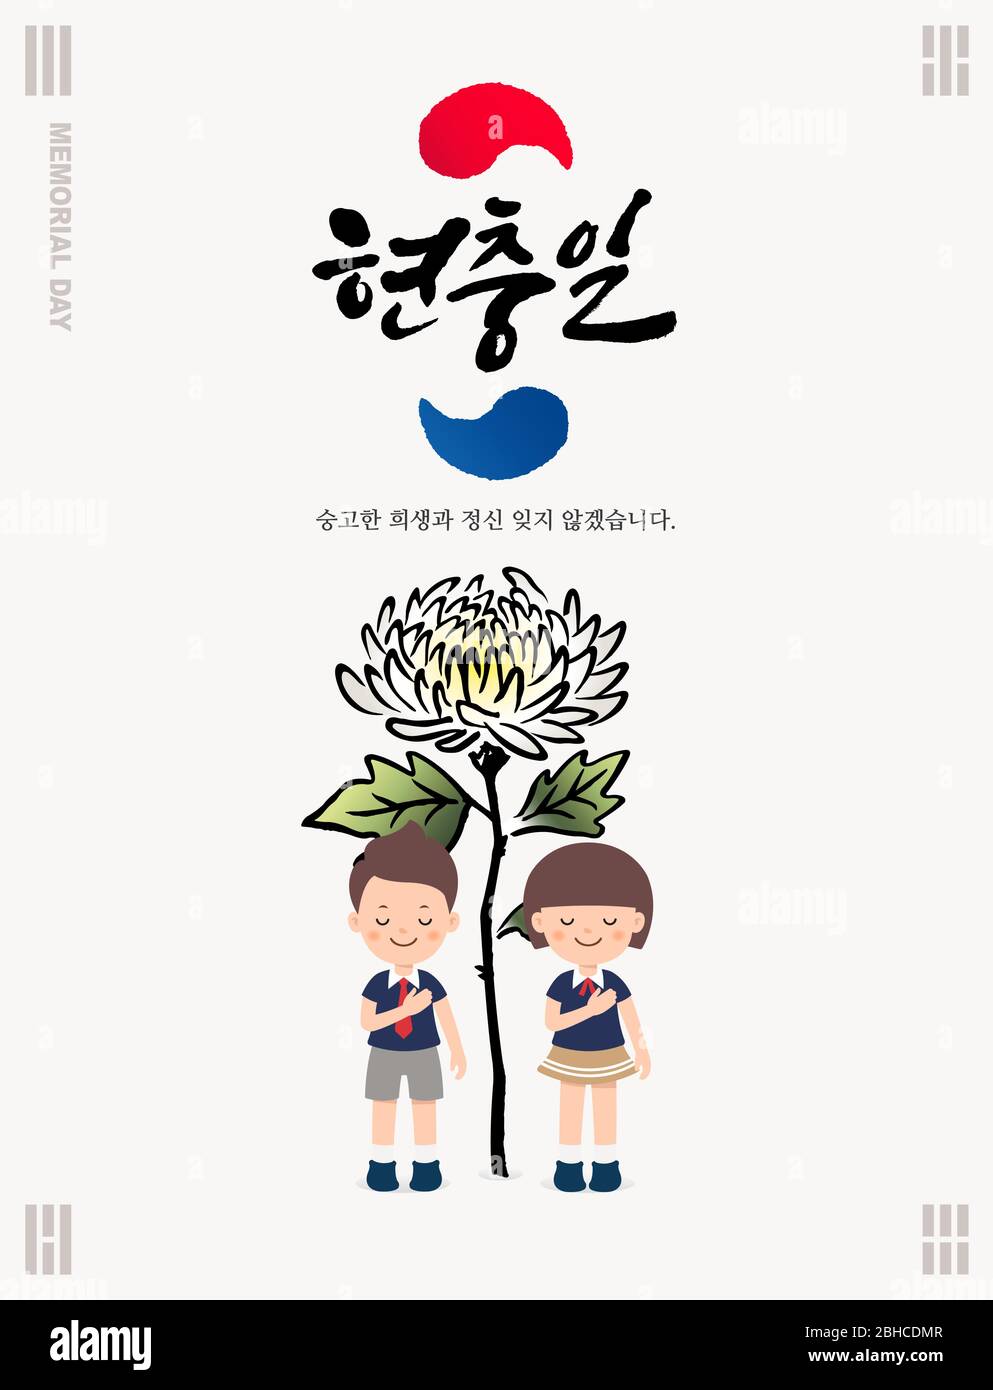 Memorial Day in Korea. Children's mourning concept design in front of chrysanthemum flowers. Korean Memorial Day, Korean Translation. Stock Vector